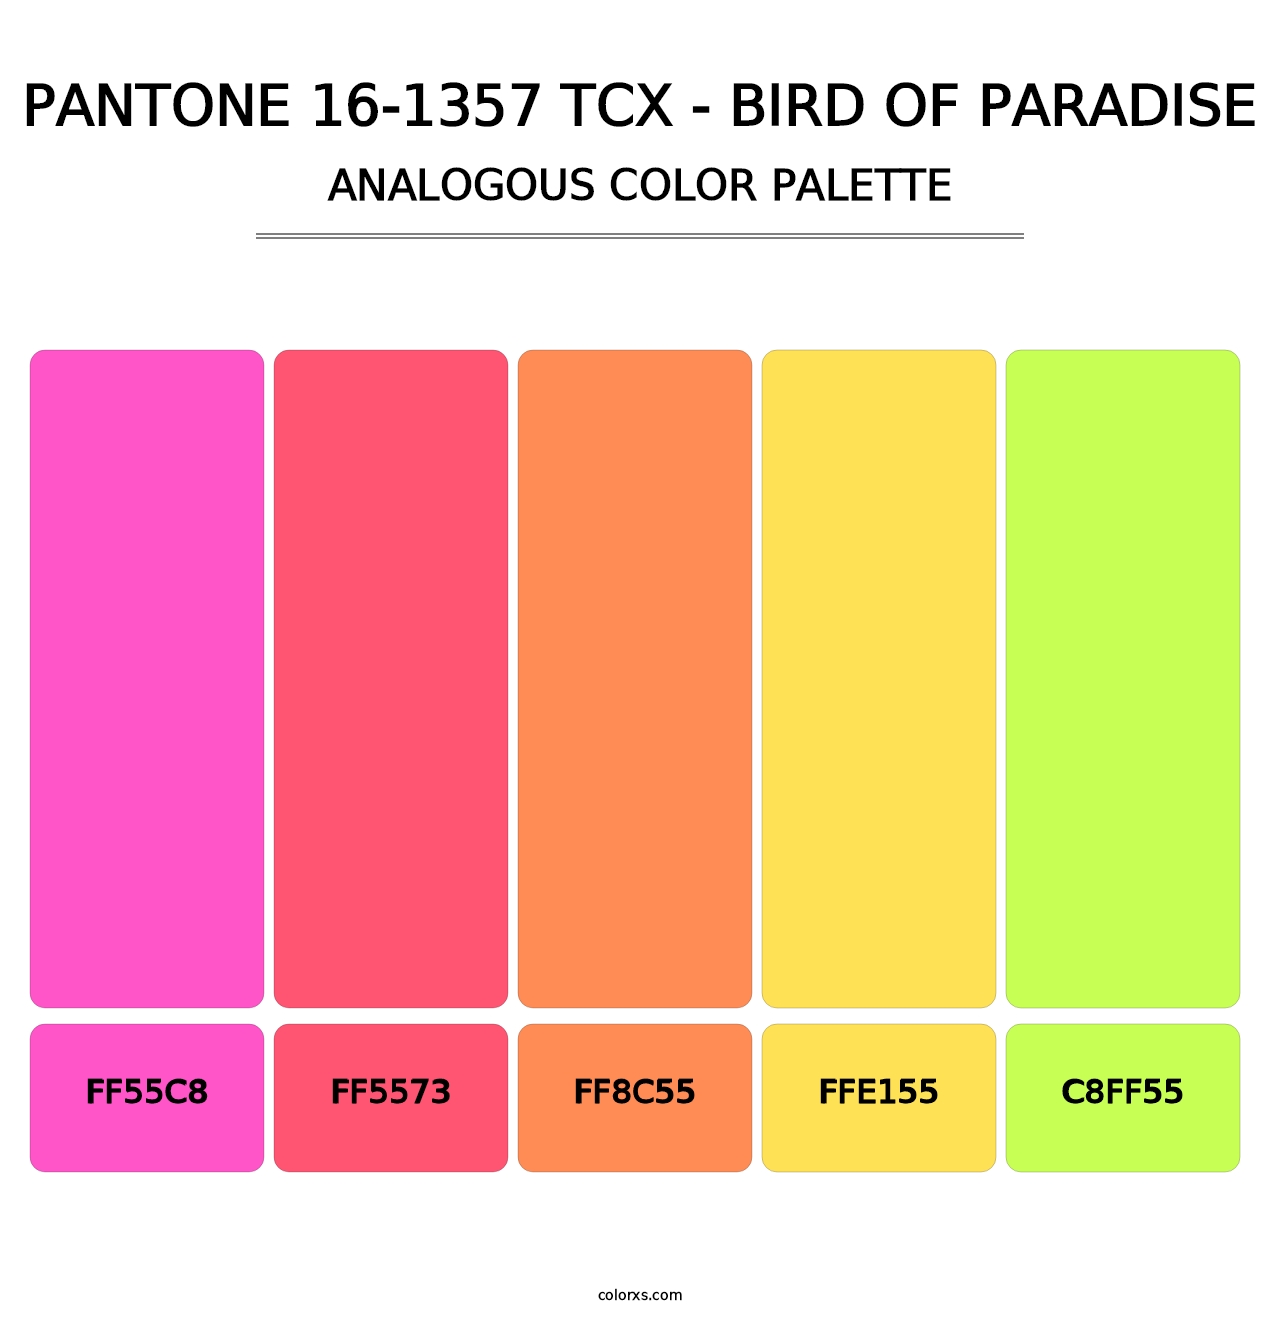 PANTONE 16-1357 TCX - Bird of Paradise - Analogous Color Palette